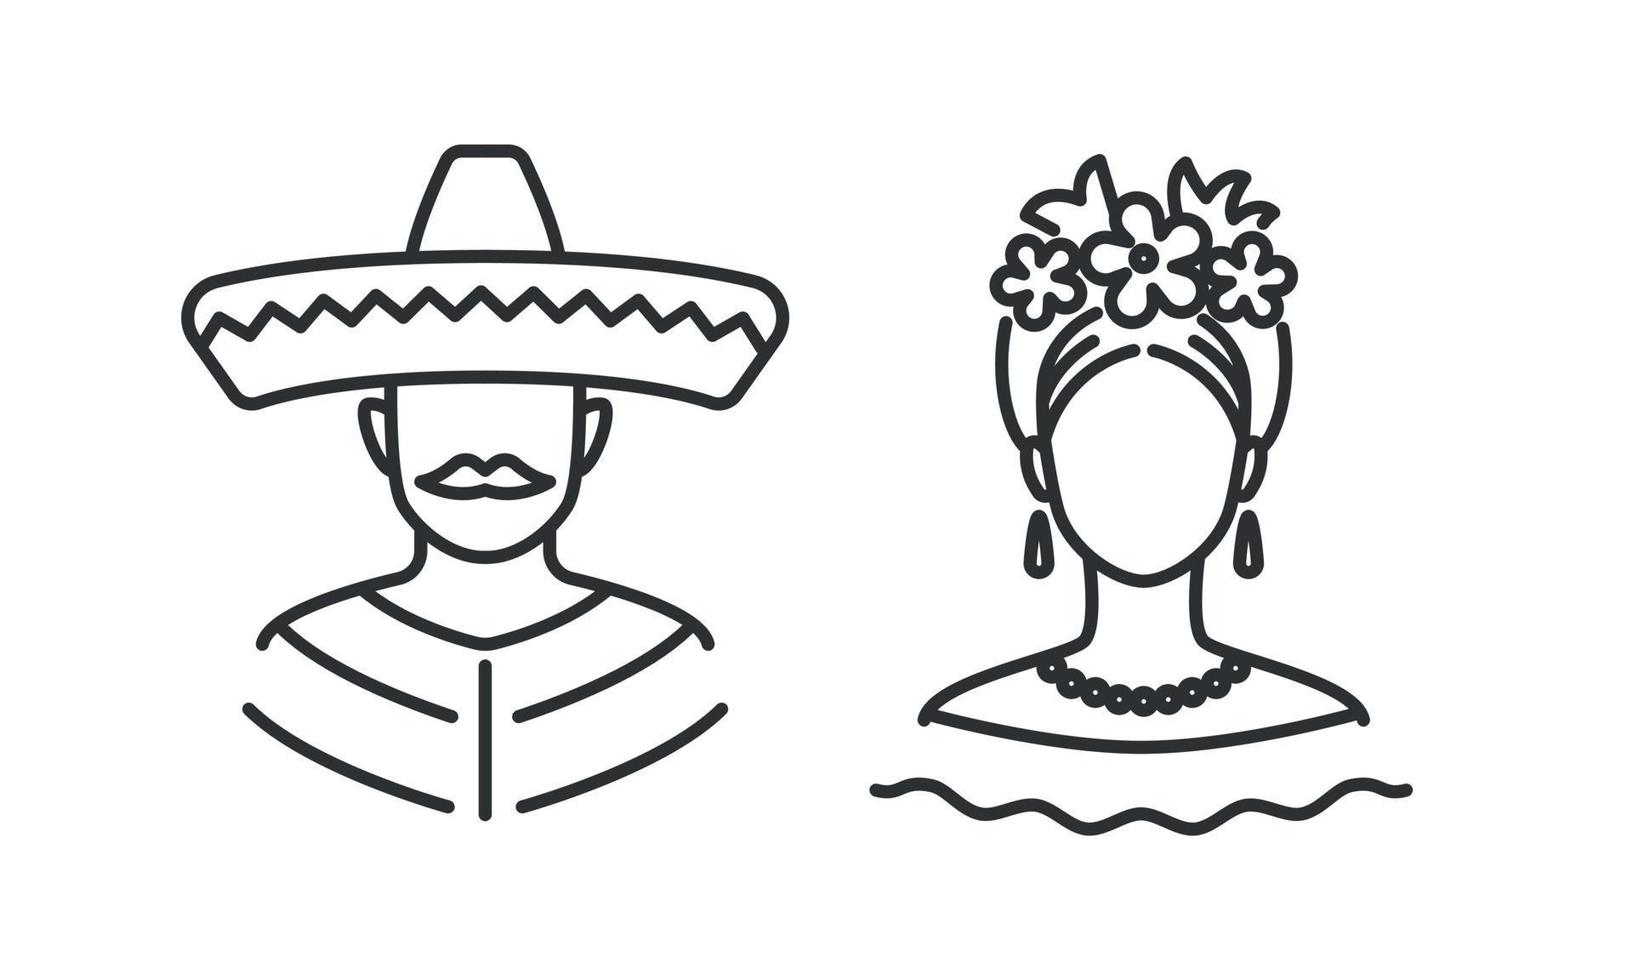 mexikaner, mann und frau zeilensymbol gesetzt. Benutzerbild. Vektor-Illustration isoliert auf weißem Hintergrund vektor